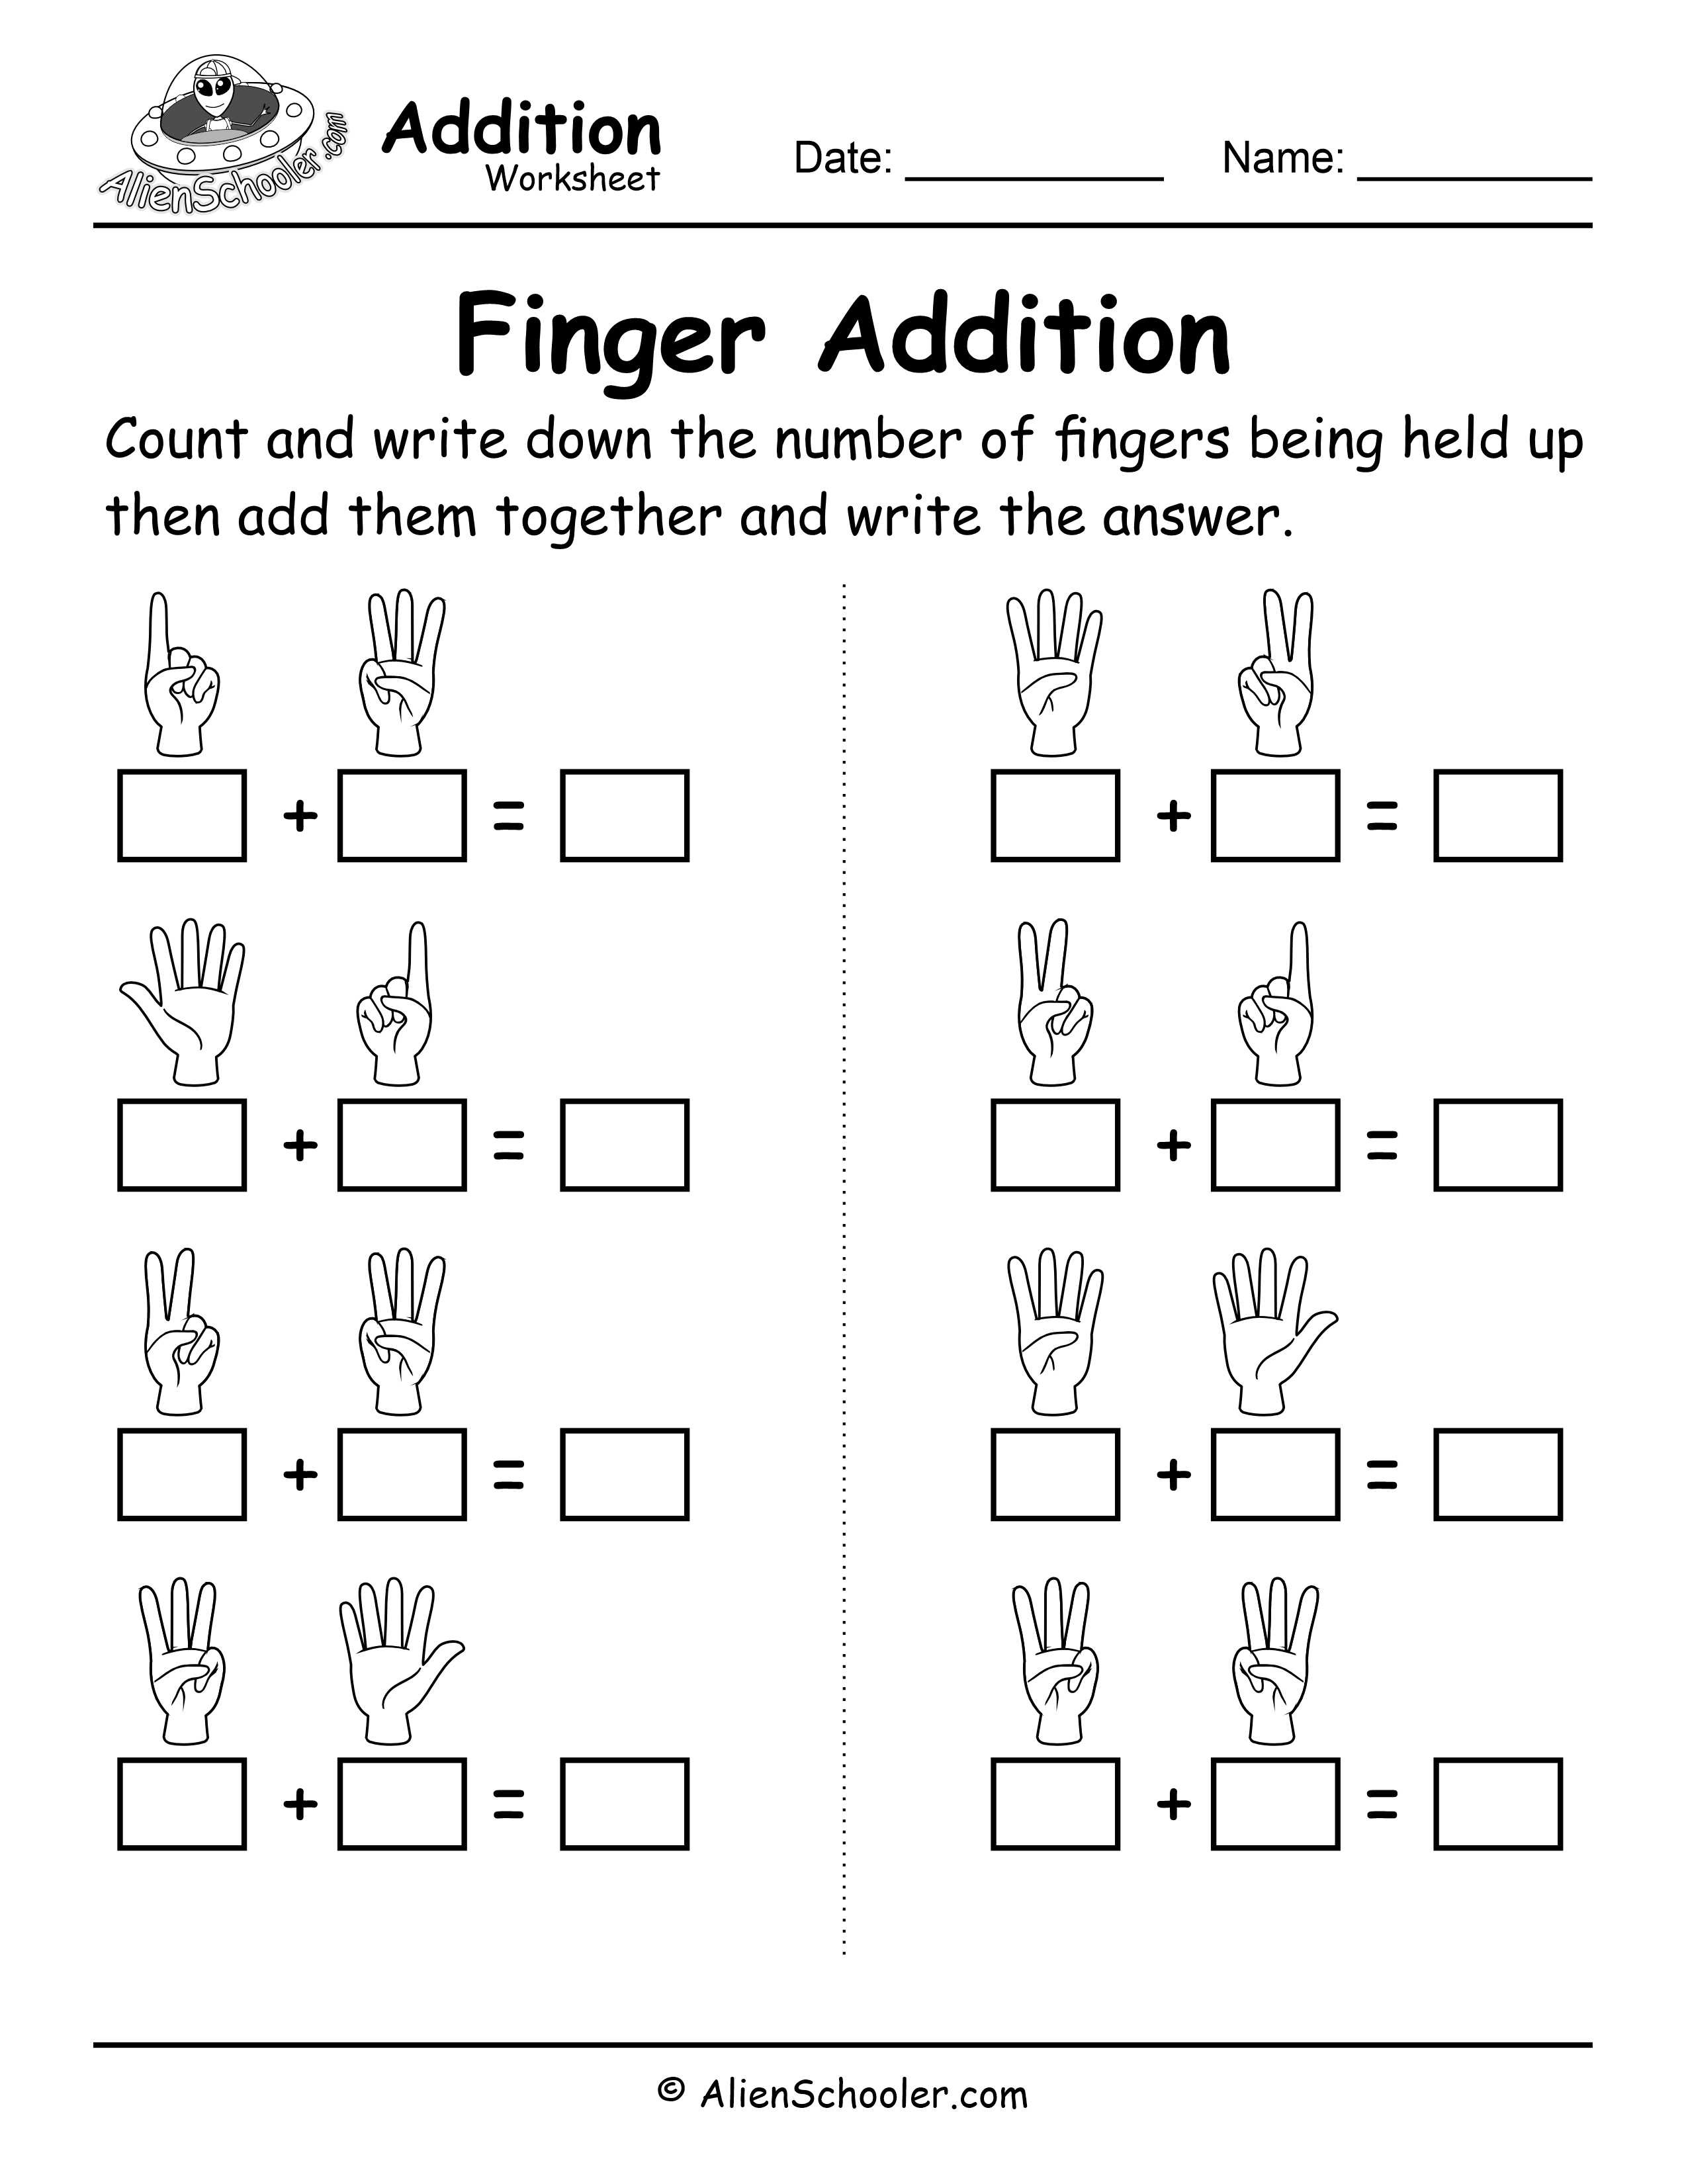 Finger Addition Worksheet 1 - Alien Schooler